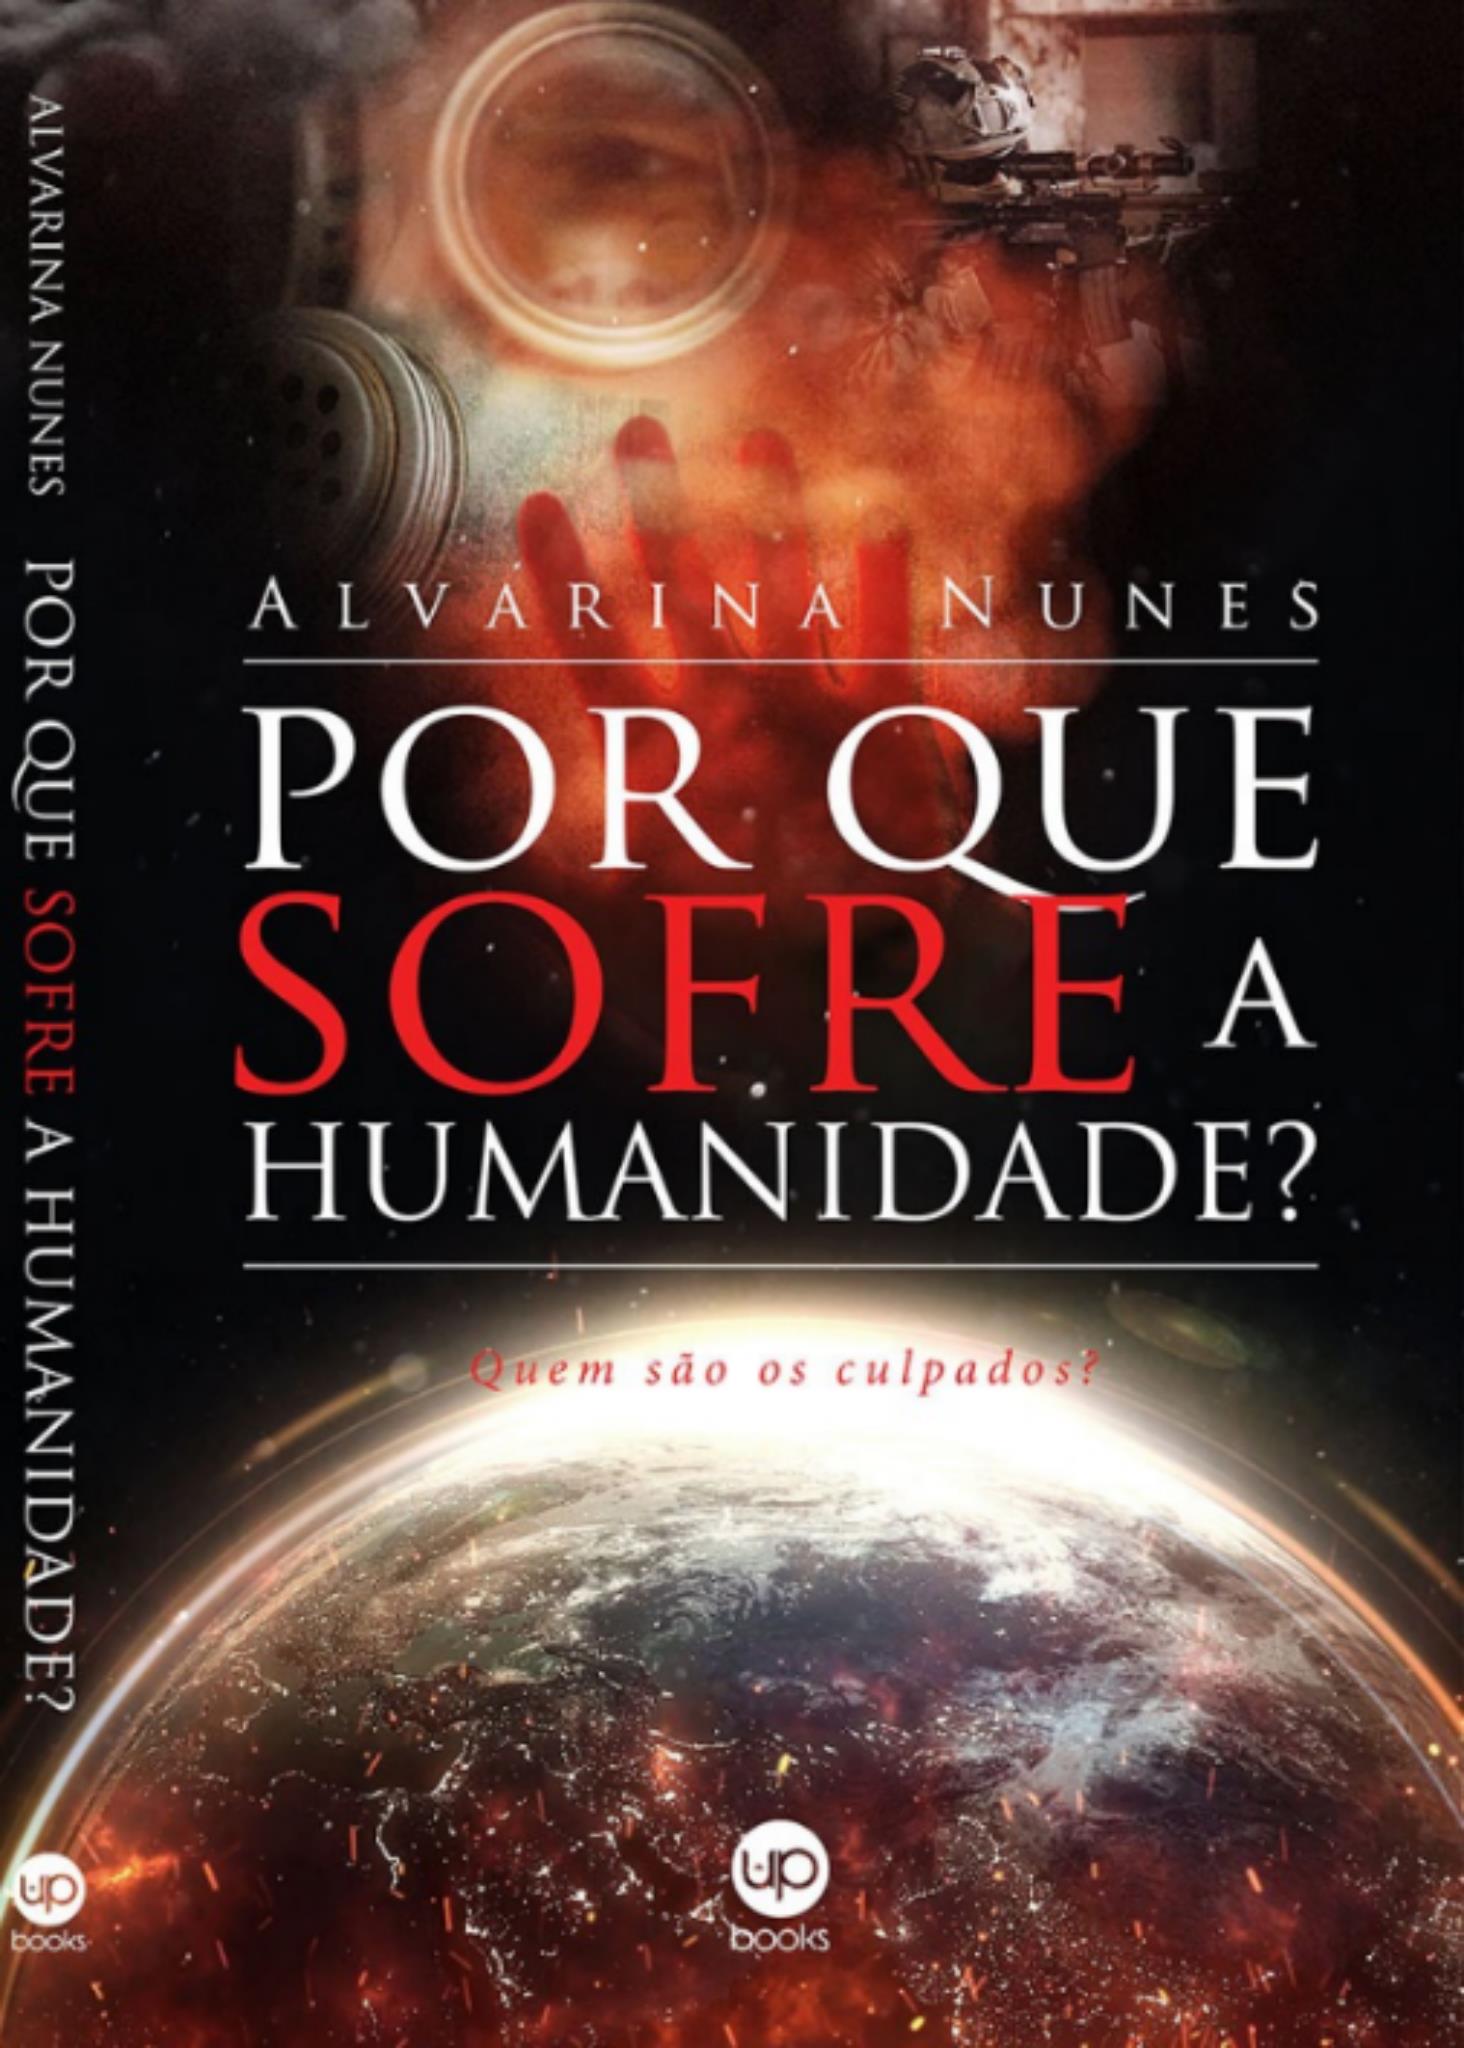 Alvarina Nunes